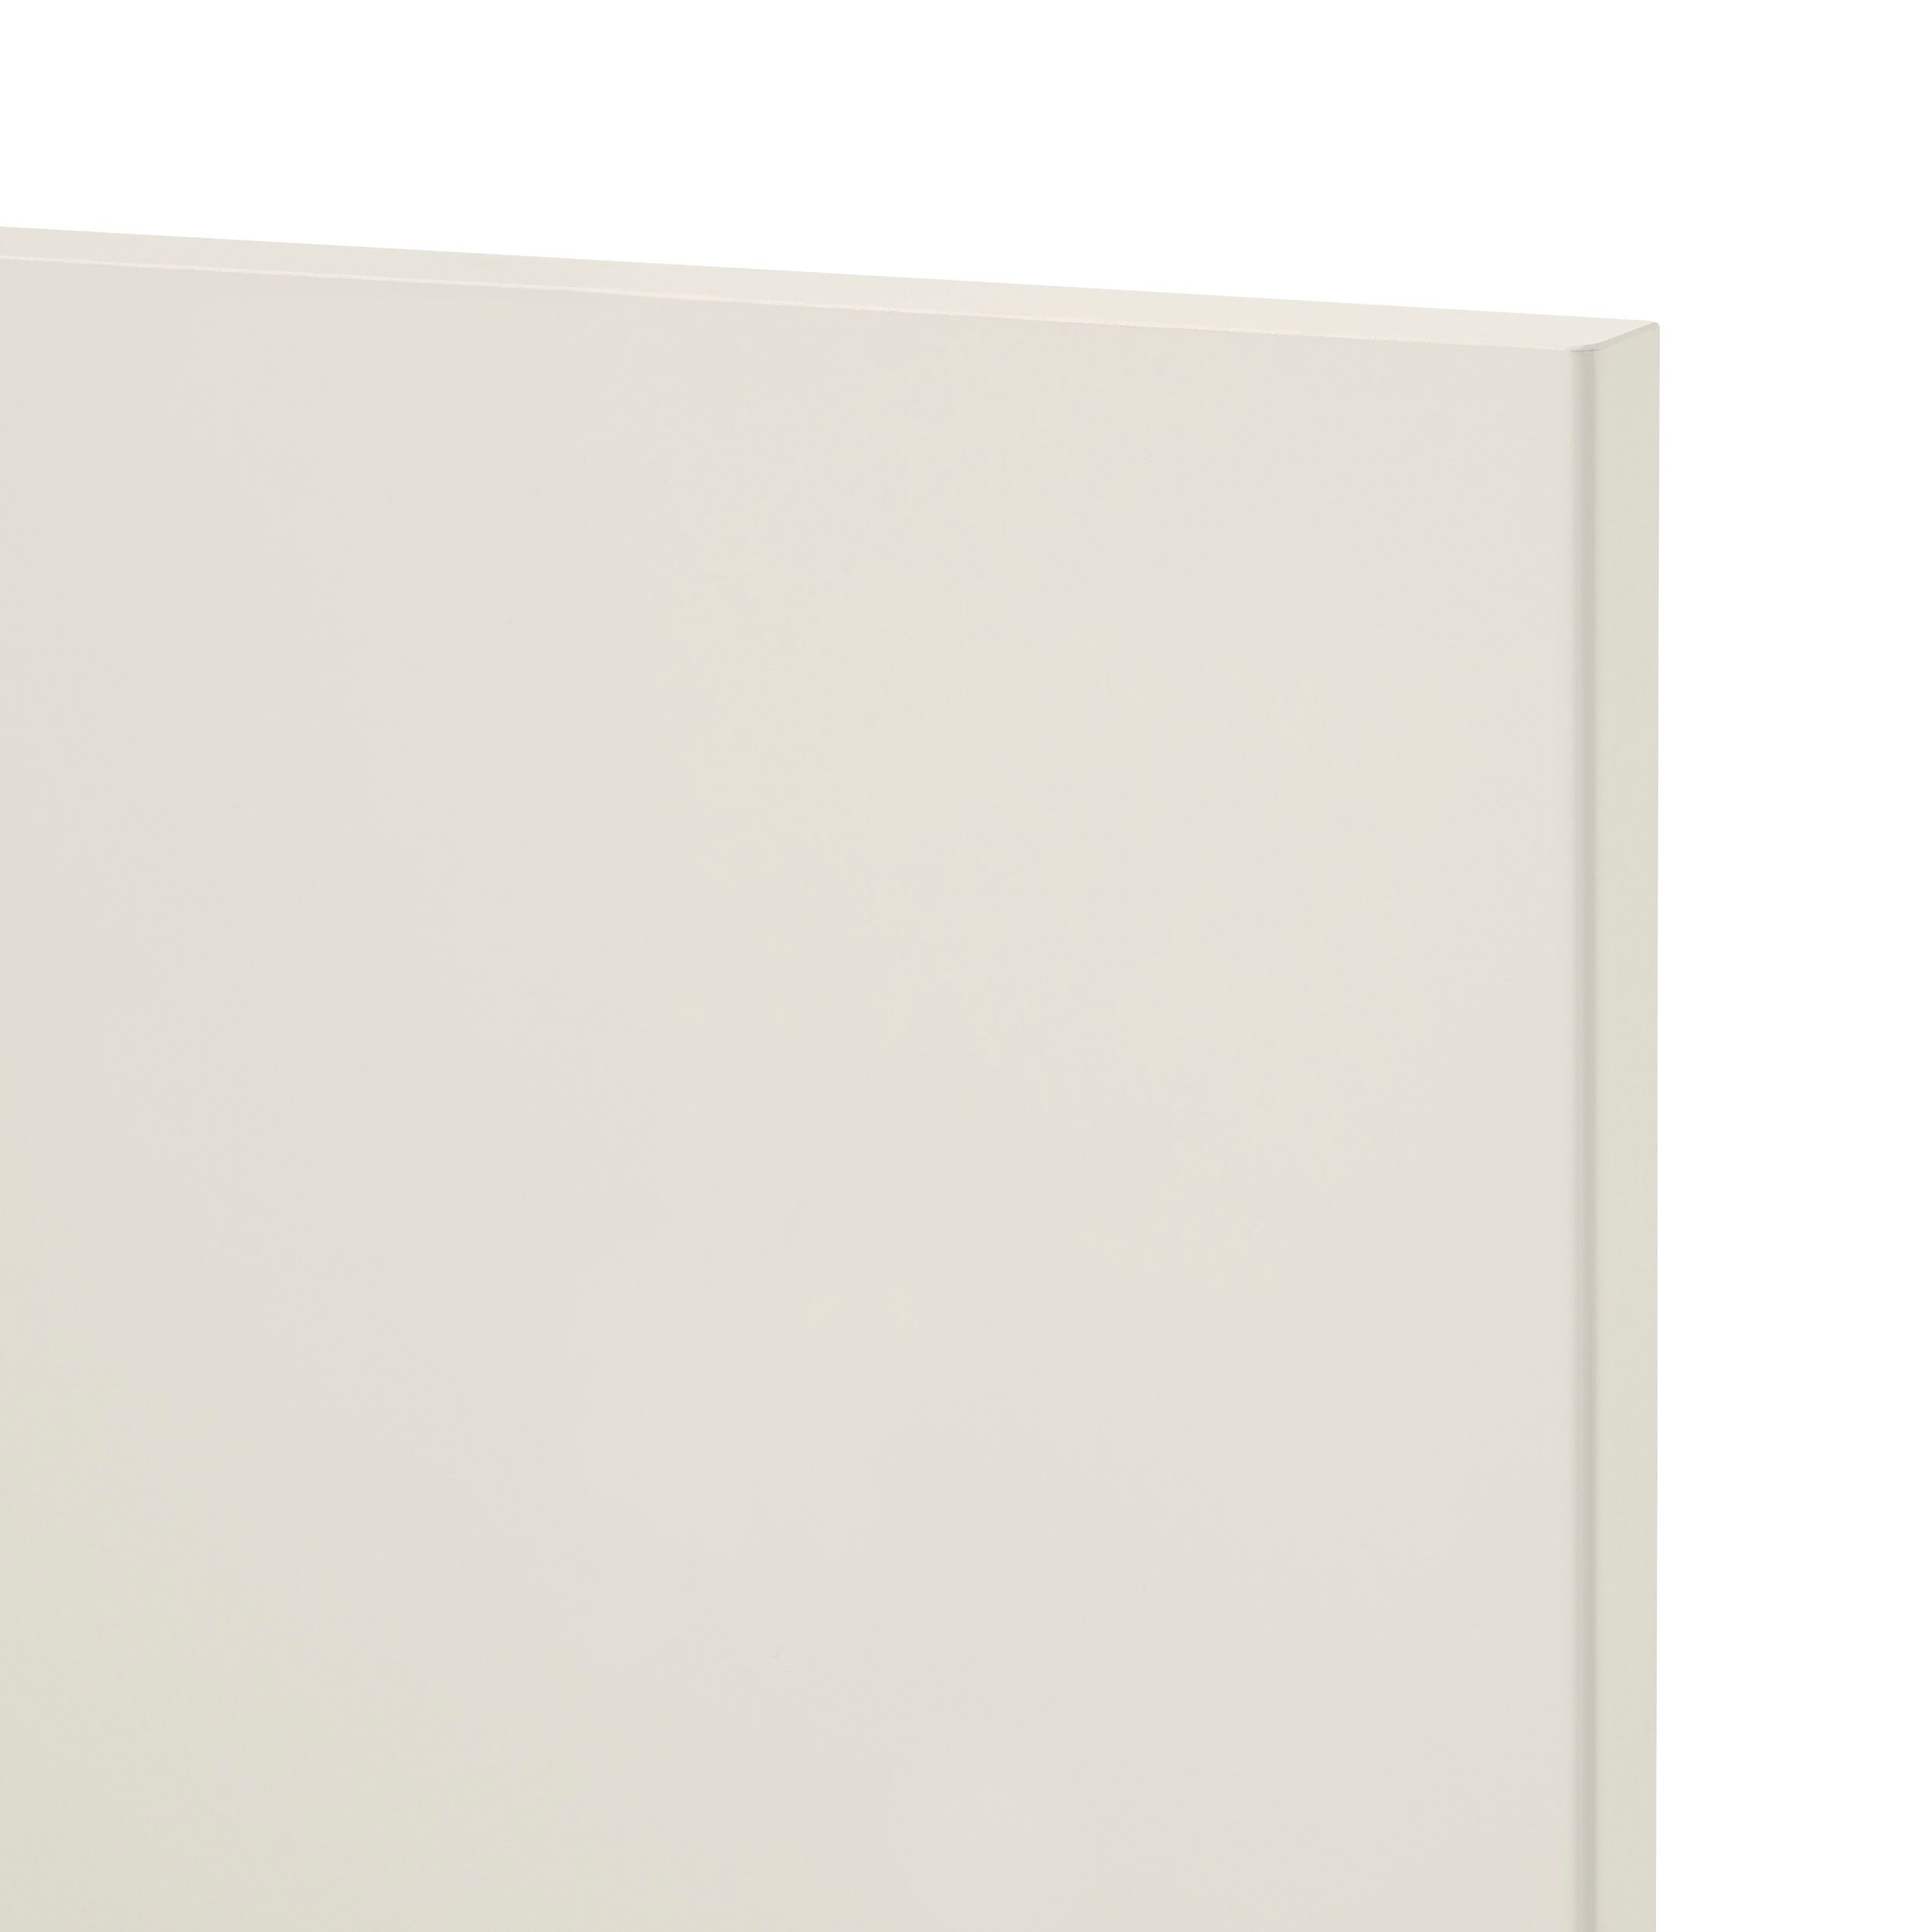 GoodHome Stevia Gloss cream slab Tall wall Cabinet door (W)500mm (H)895mm (T)18mm